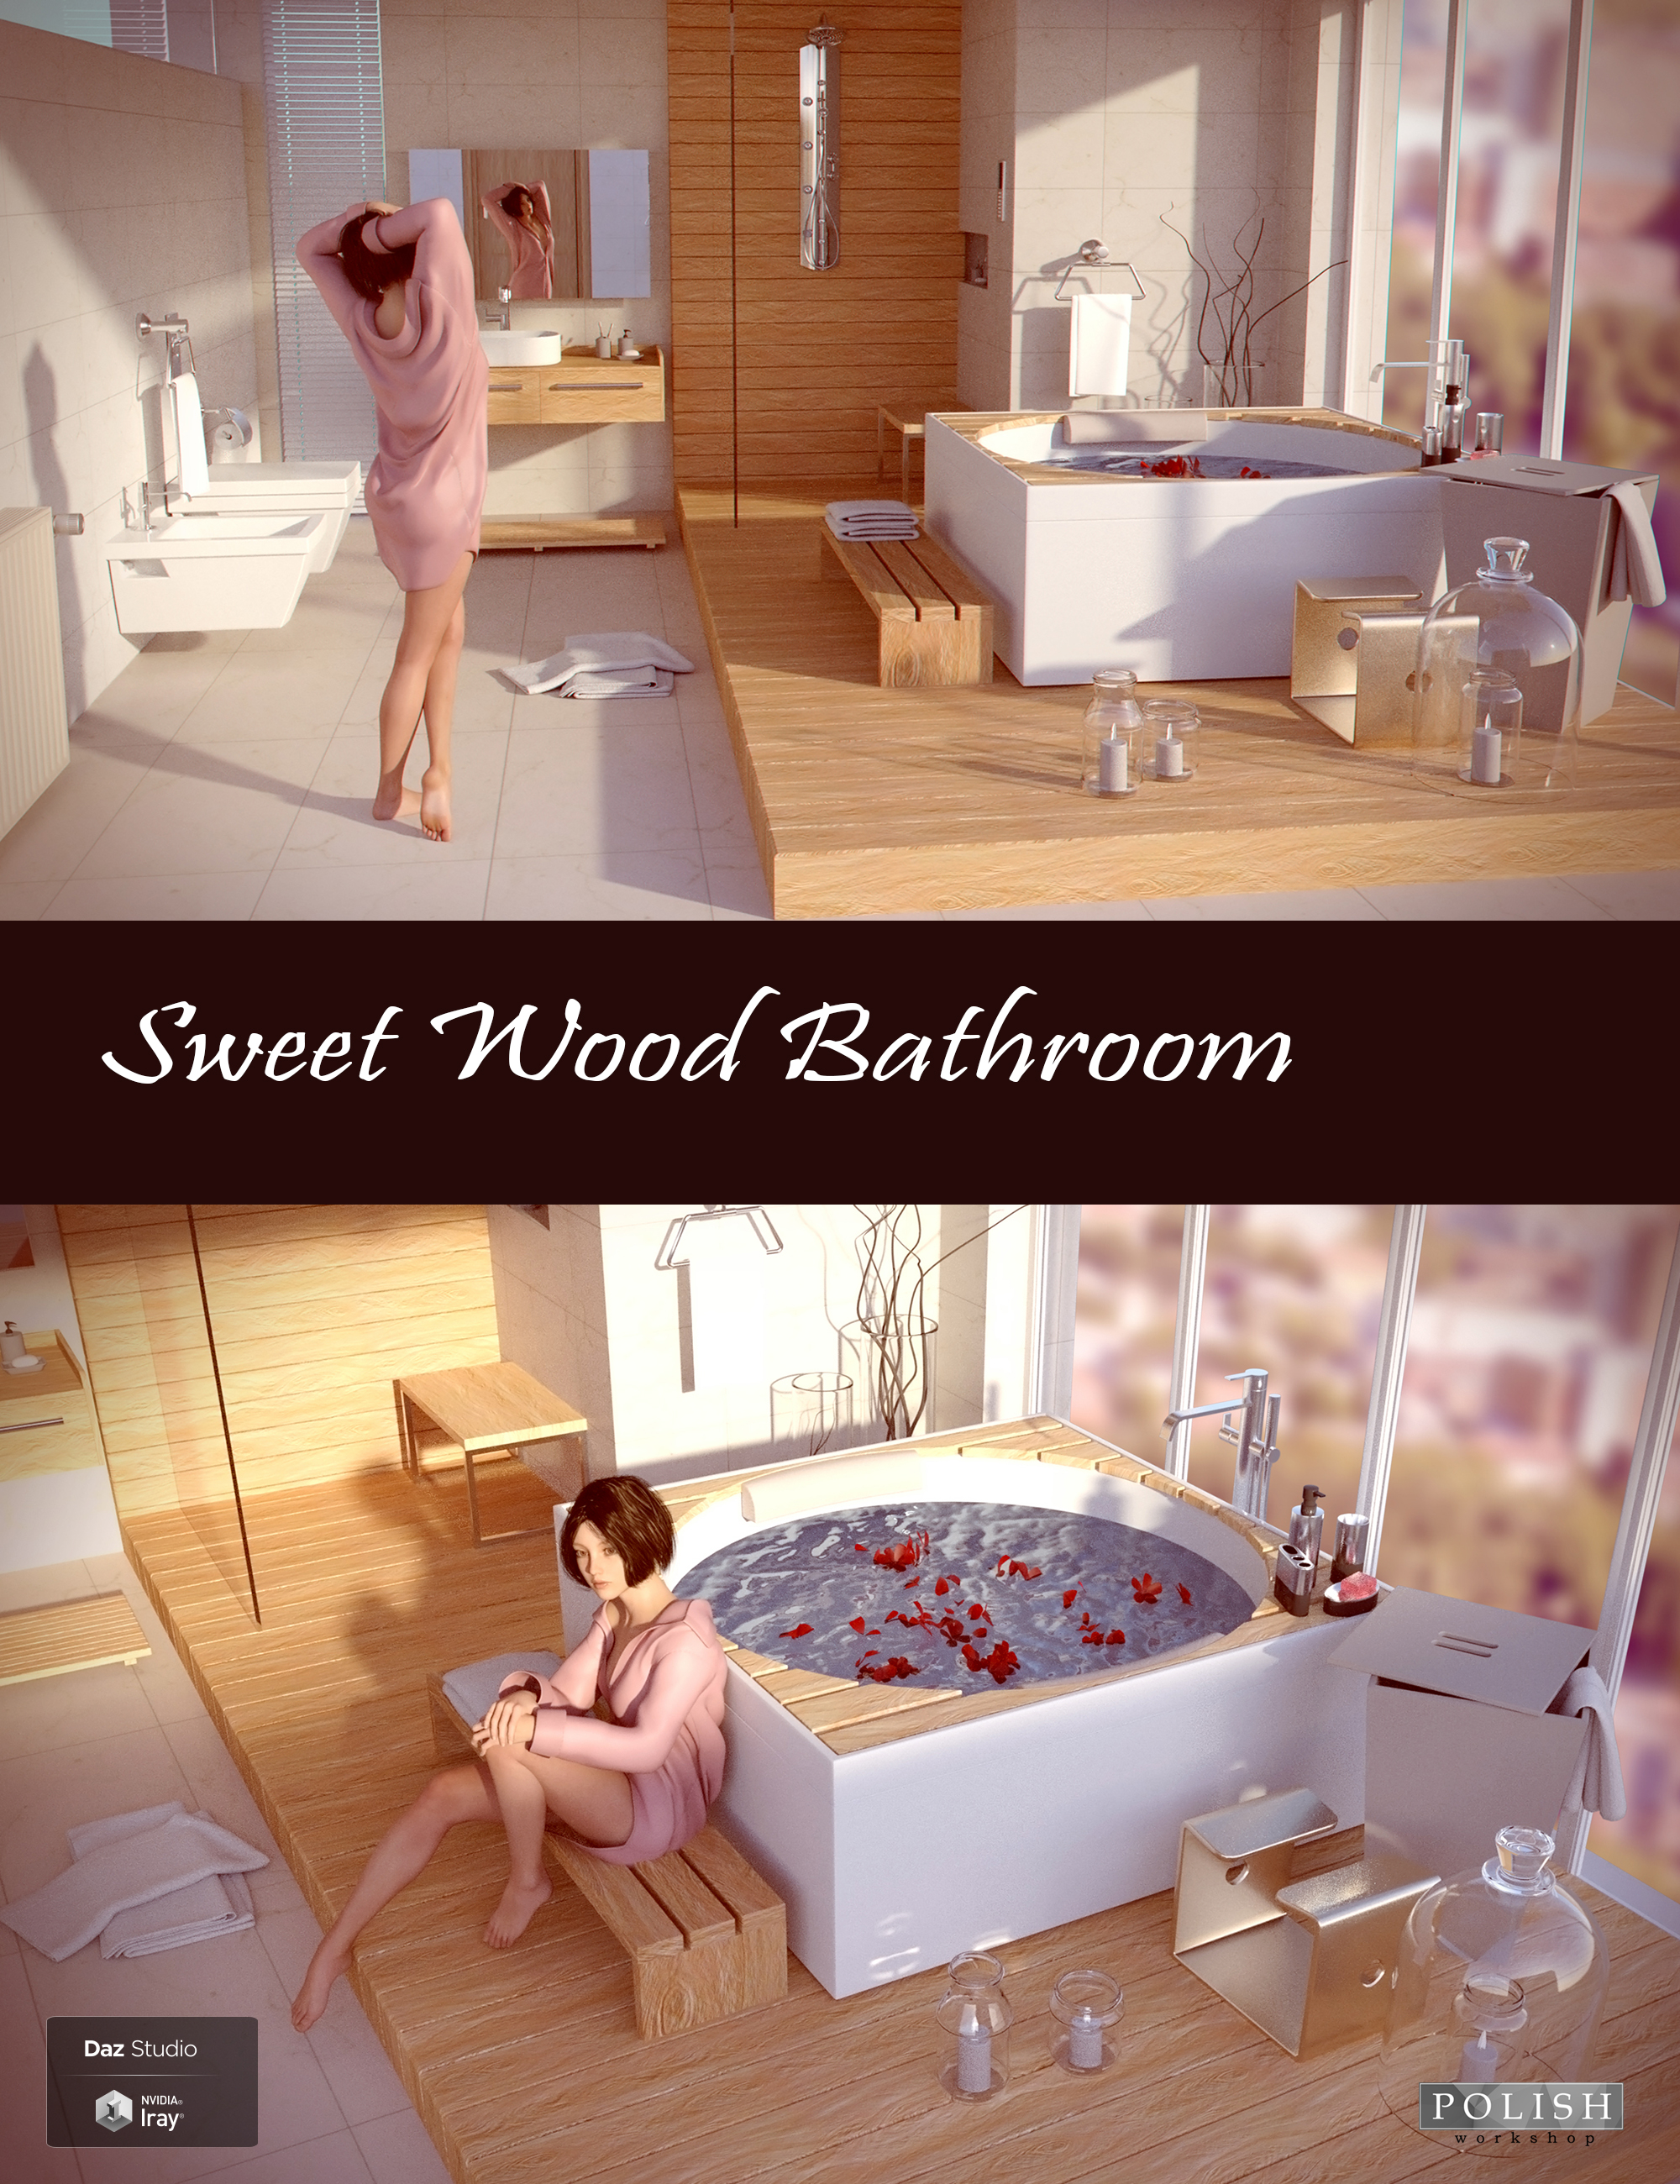 Sweet Wood Bathroom by: Polish, 3D Models by Daz 3D